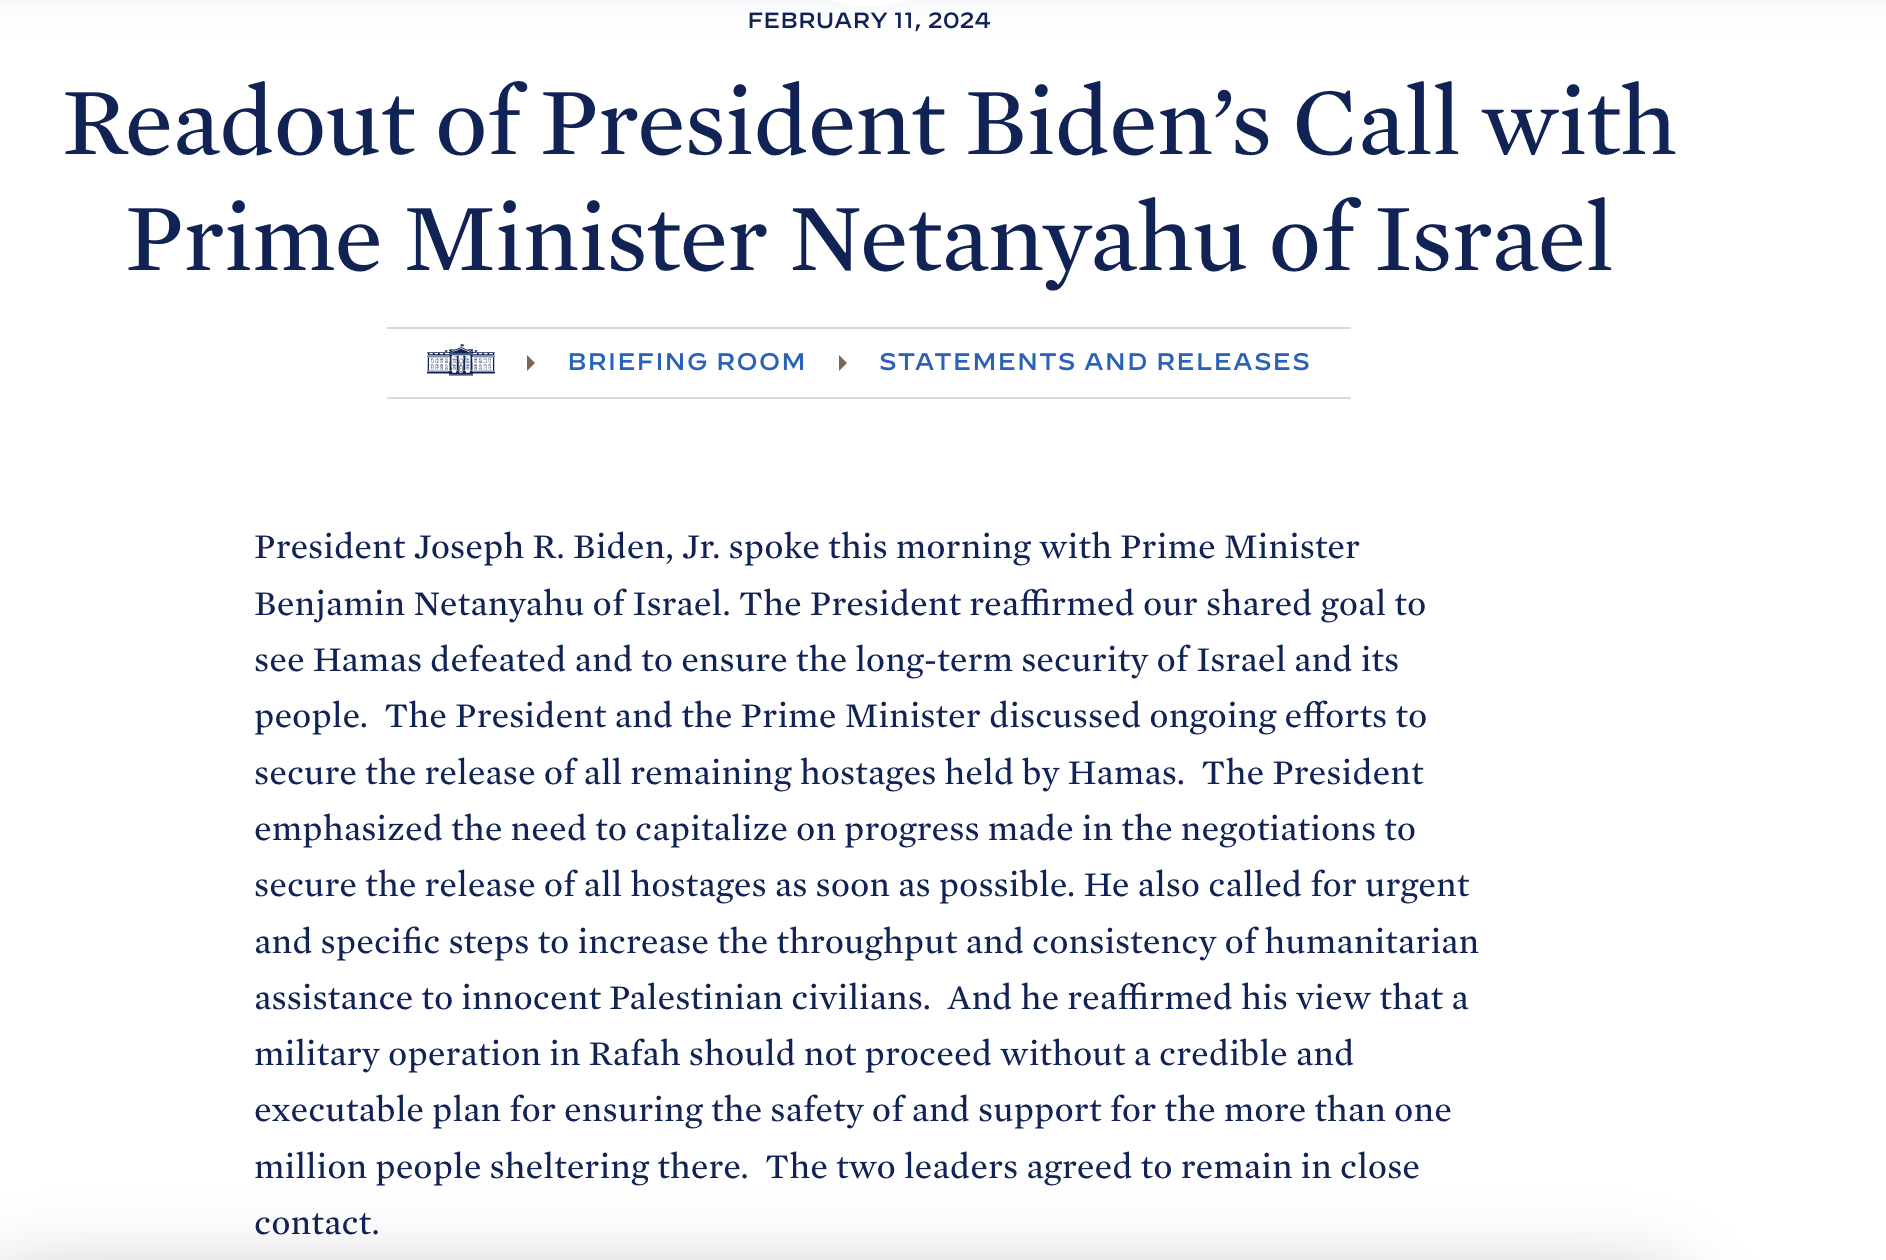 Comunicado sobre la llamada entre Biden y Netanyahu del 11 de febrero de 2024